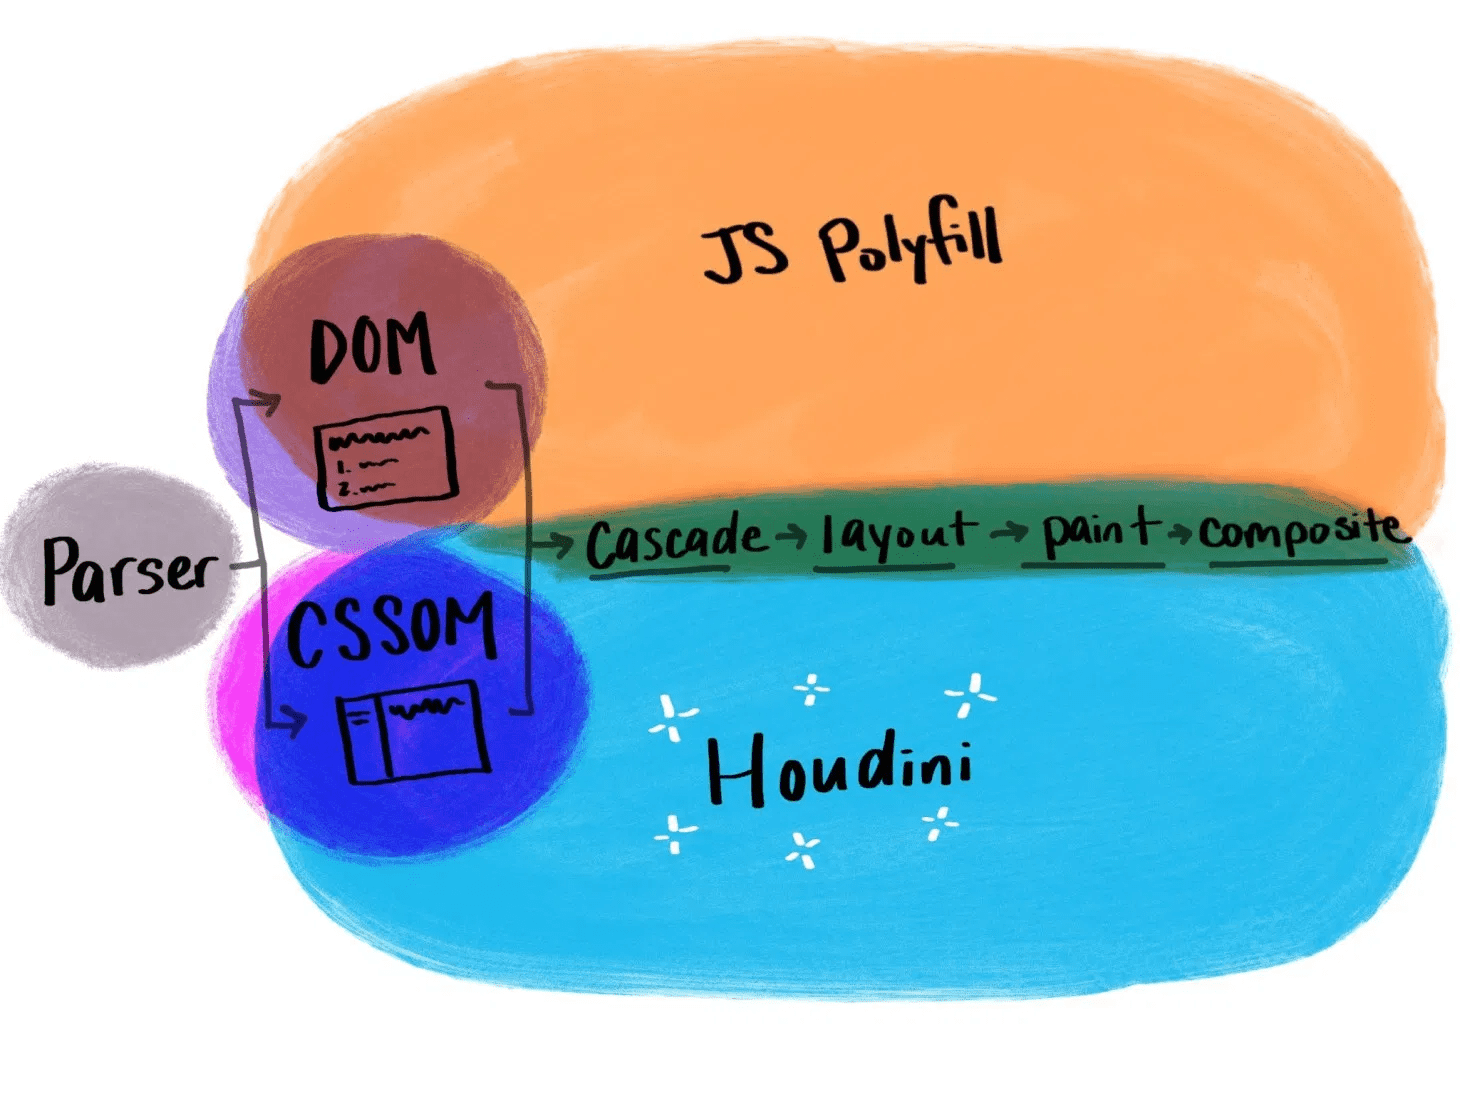 Иллюстрация, показывающая, как работает Houdini по сравнению с традиционными полифилами JavaScript.